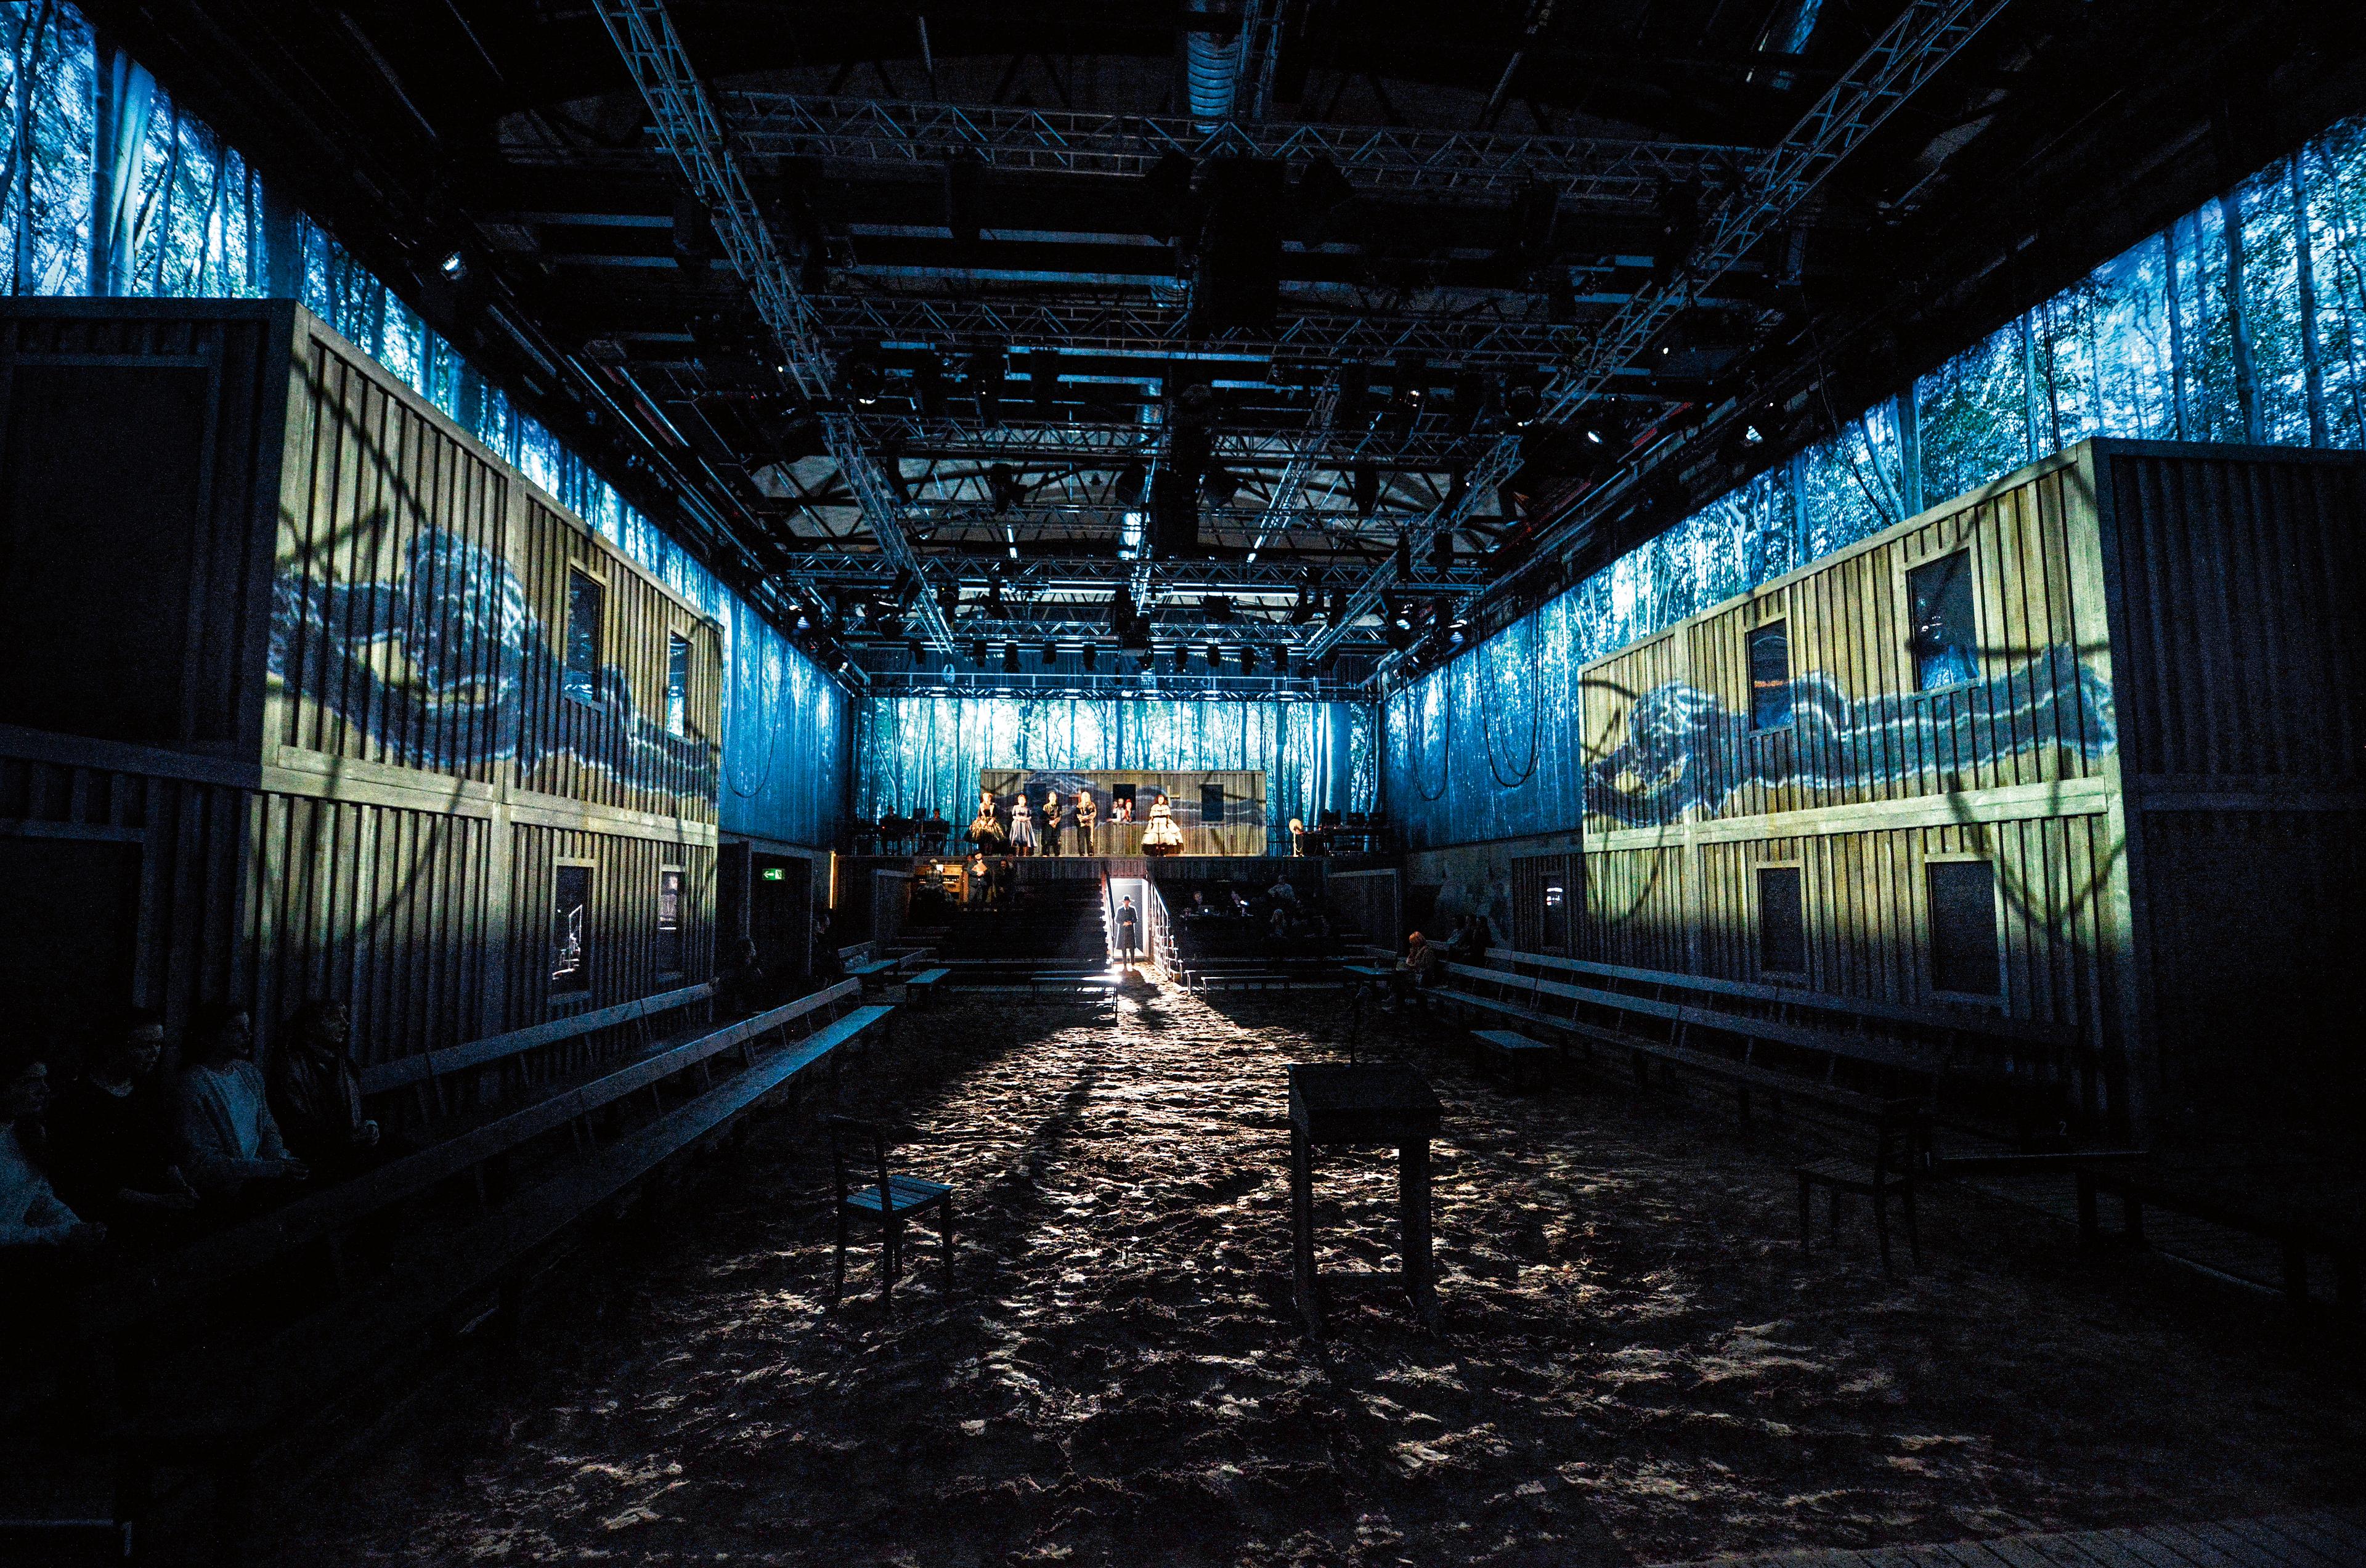 Projektionen, Tafelbilder von Jan Speckenbach in „Hexenjagd“ von Arthur Miller am Schauspielhaus Zürich, 2016, Regie Jan Bosse. Foto Tanja Dorendorf